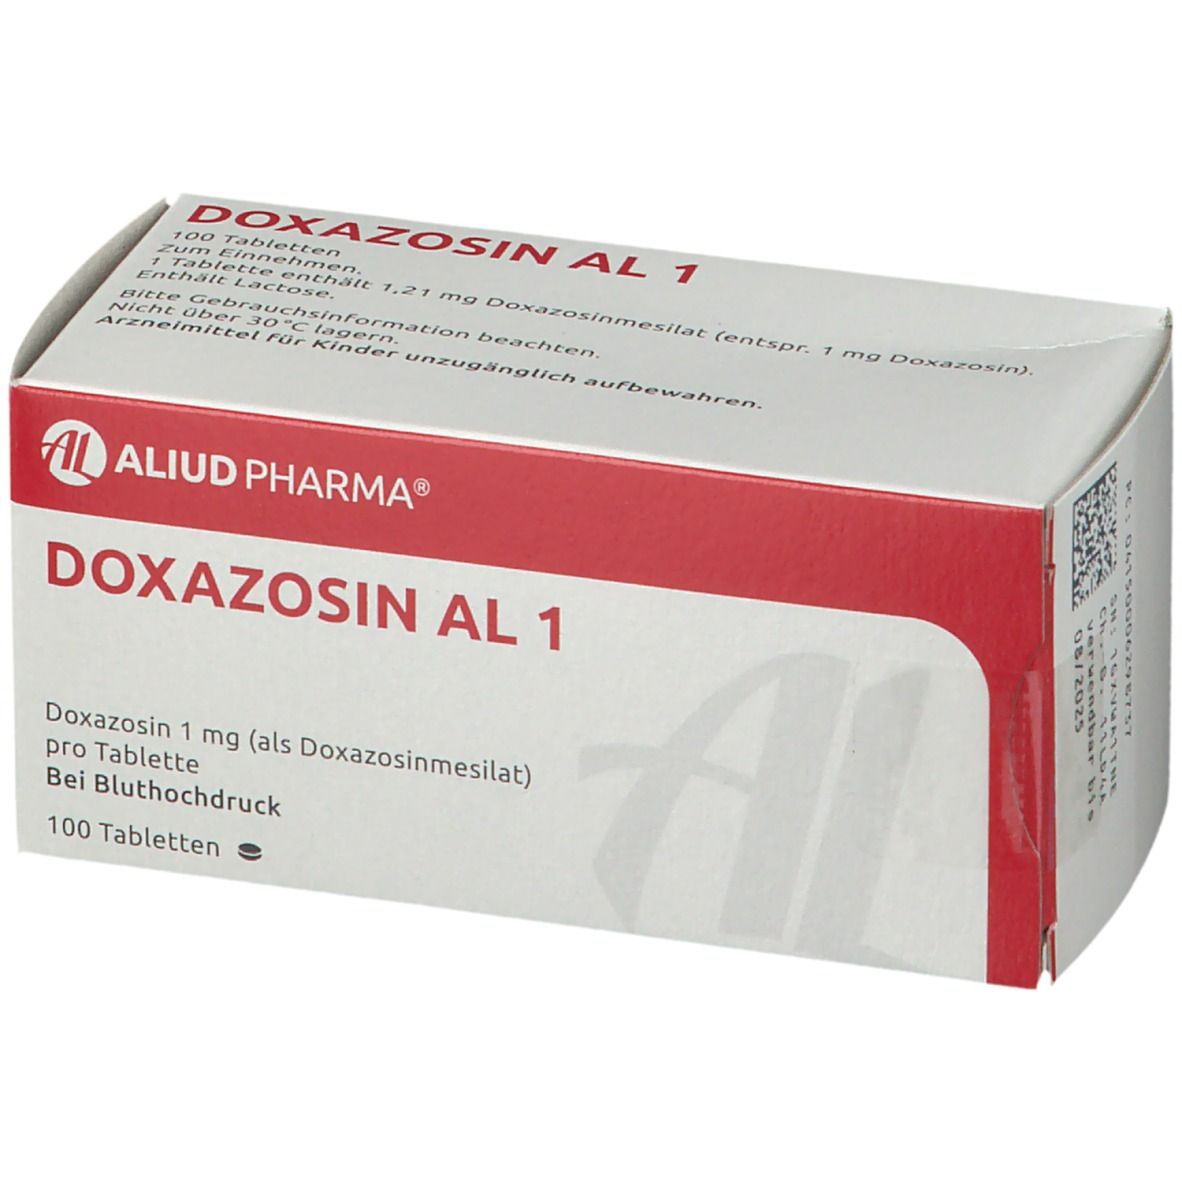 Doxazosin al 1